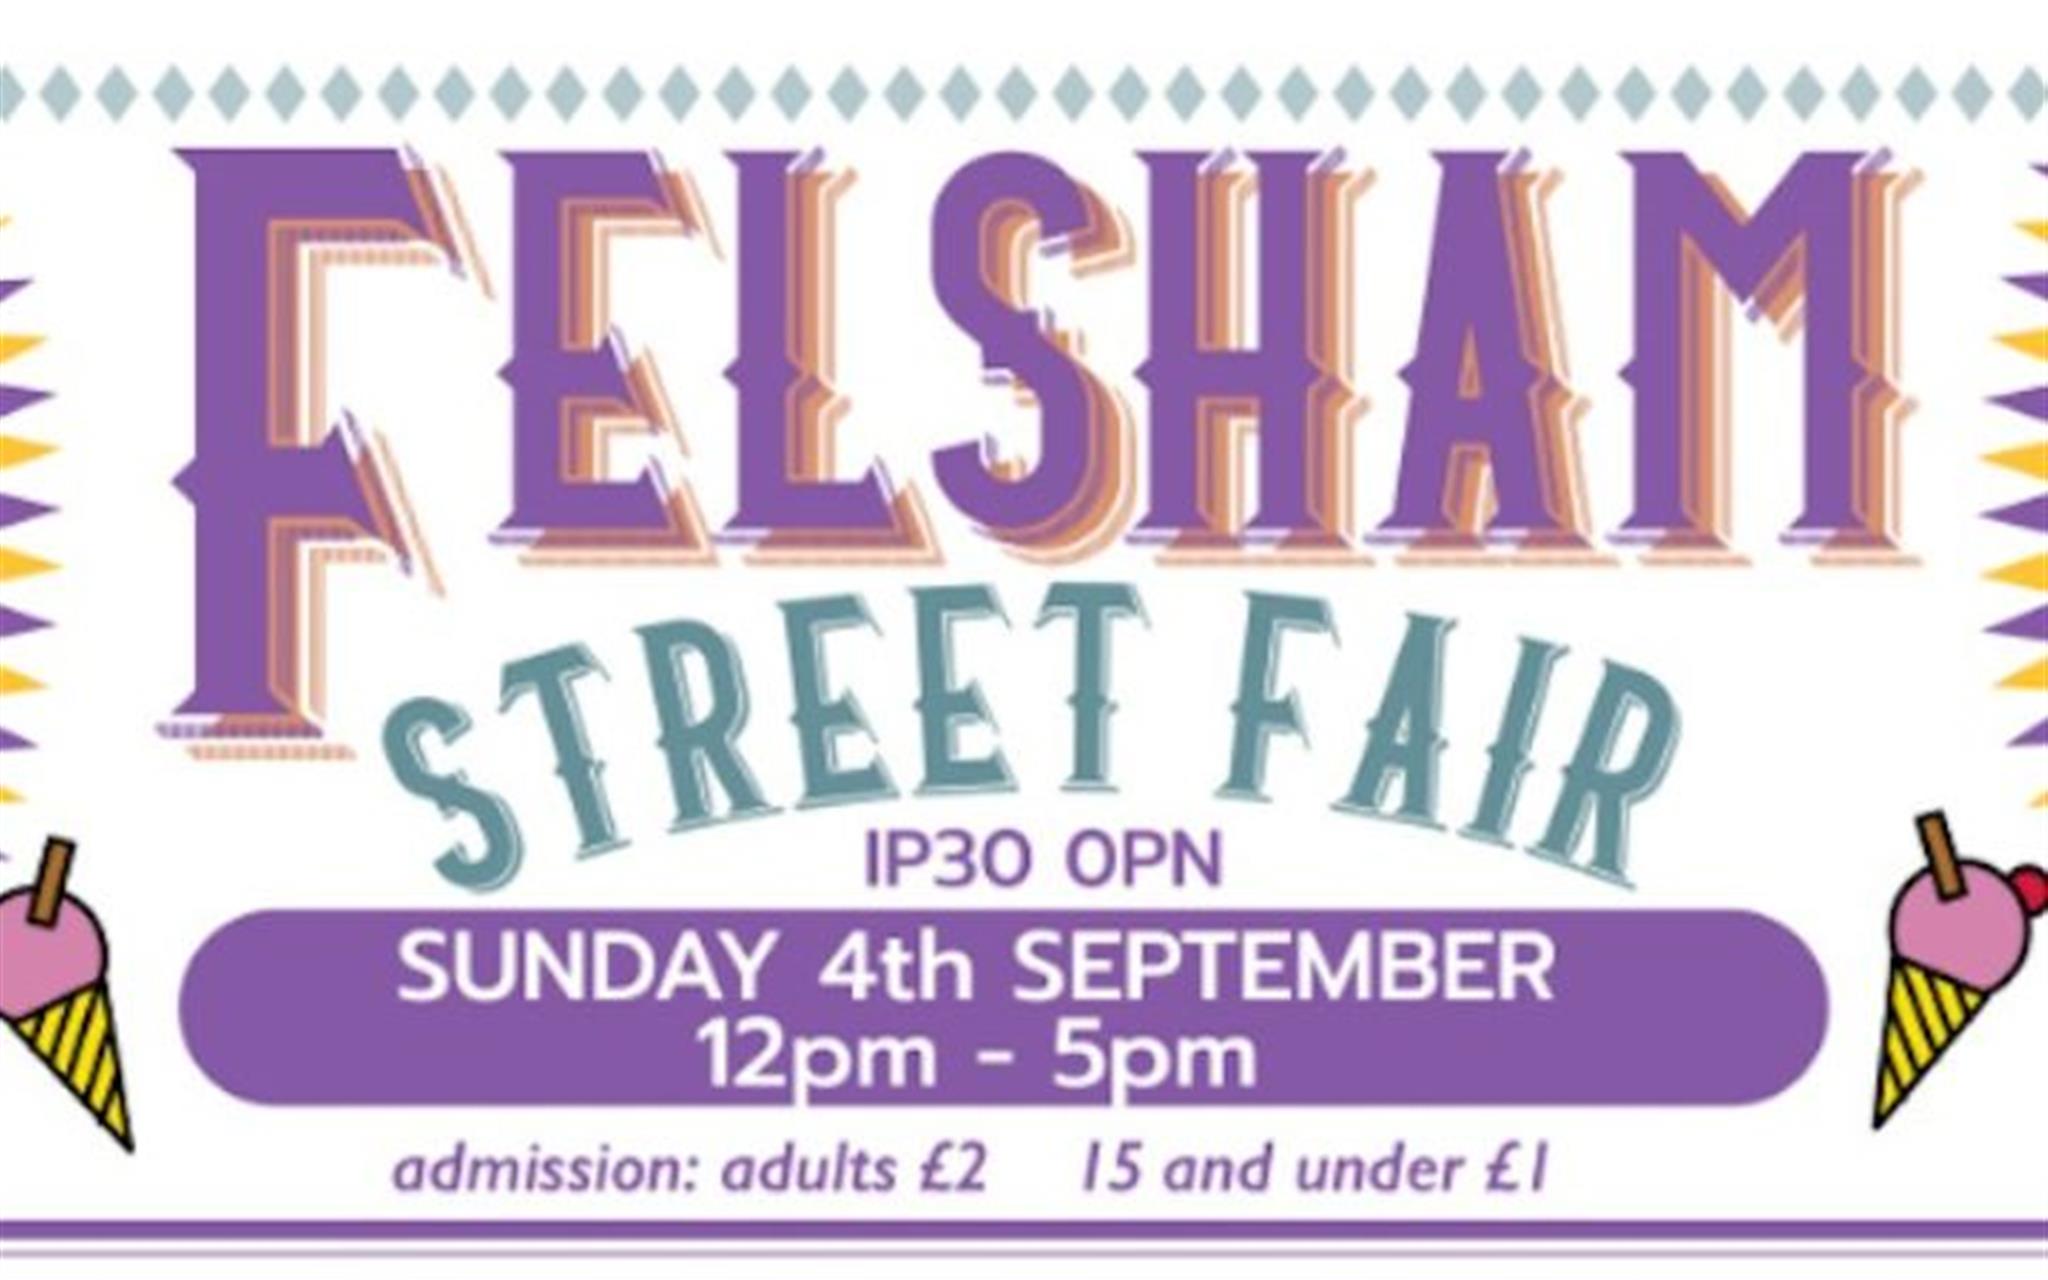 Felsham Street Fair